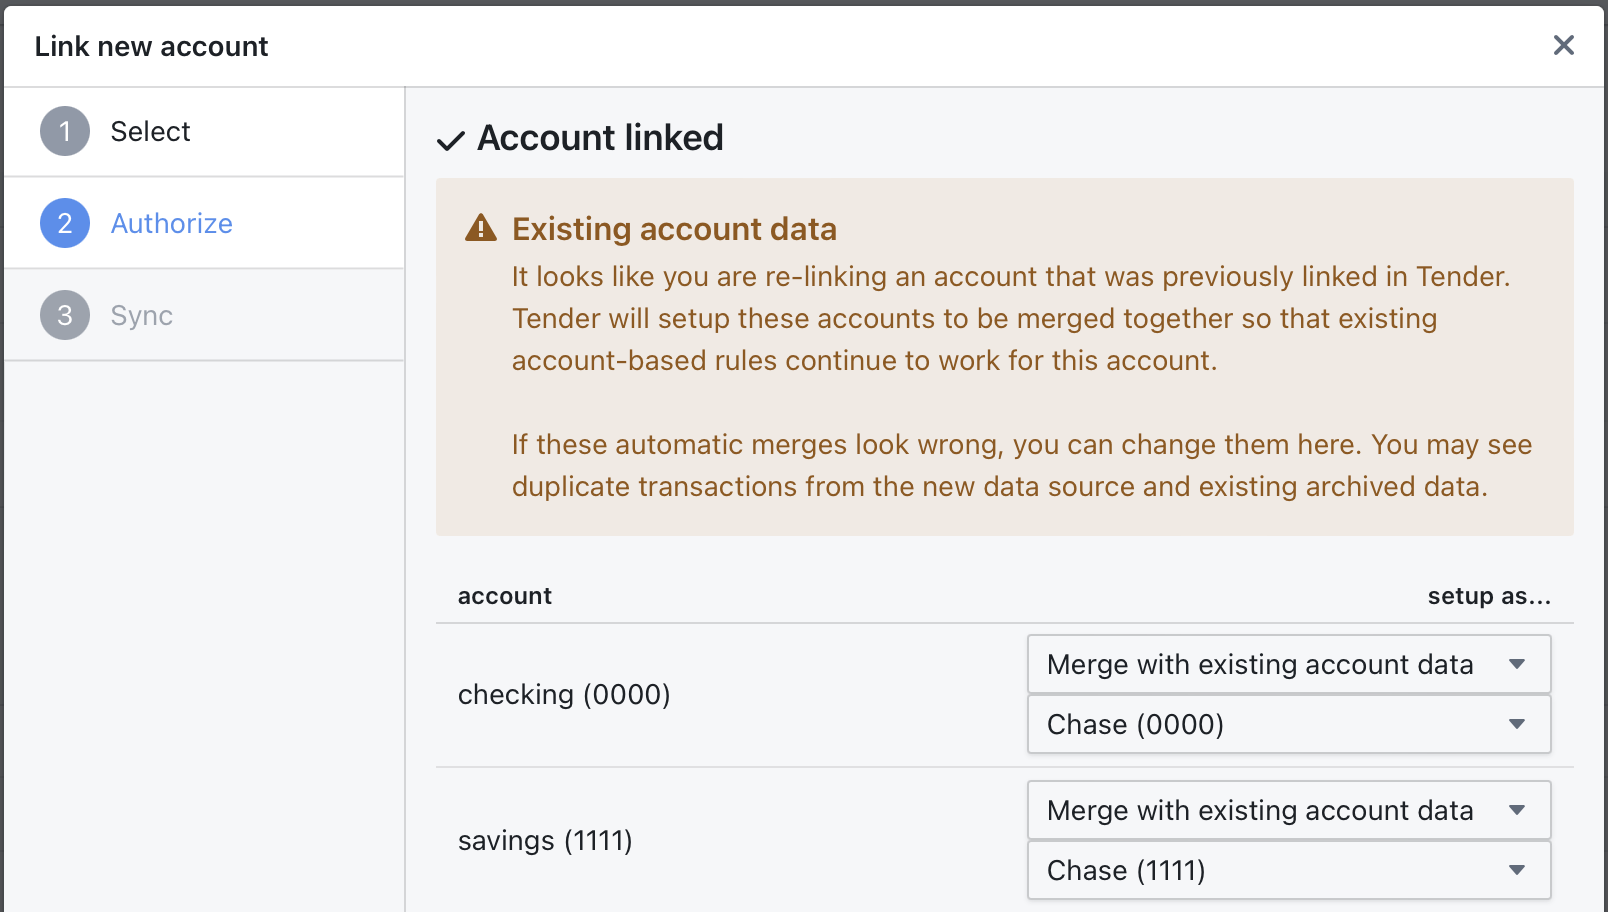 Merging accounts in Tender